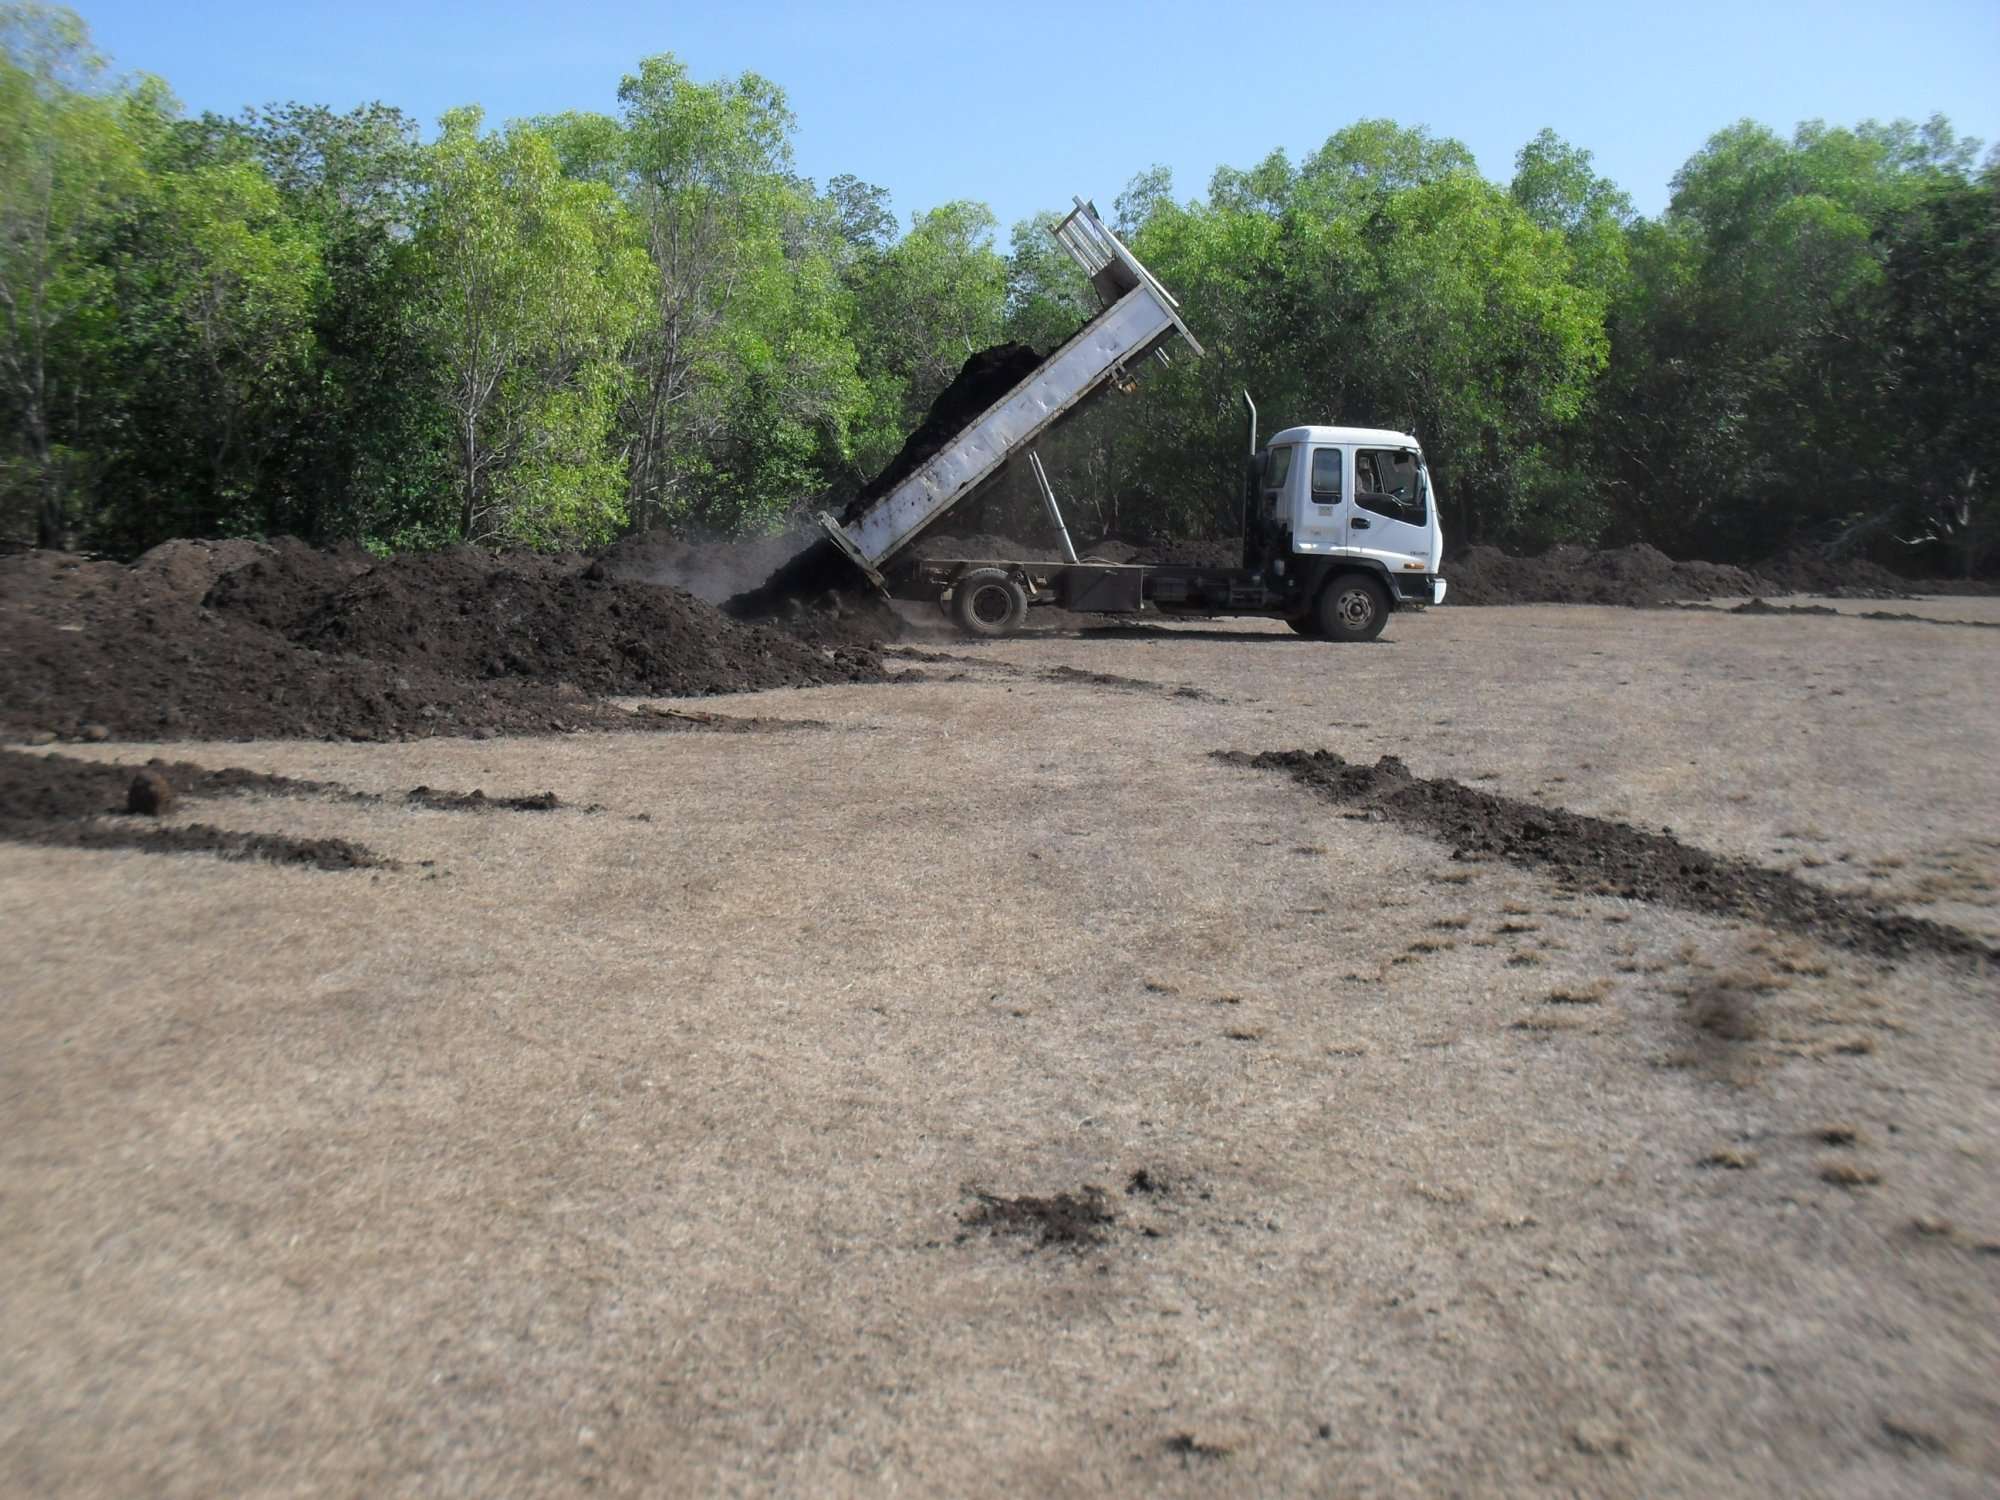 Stage 1 preparing the soil - revegitation of monsoon rainforest at East Point Reserve